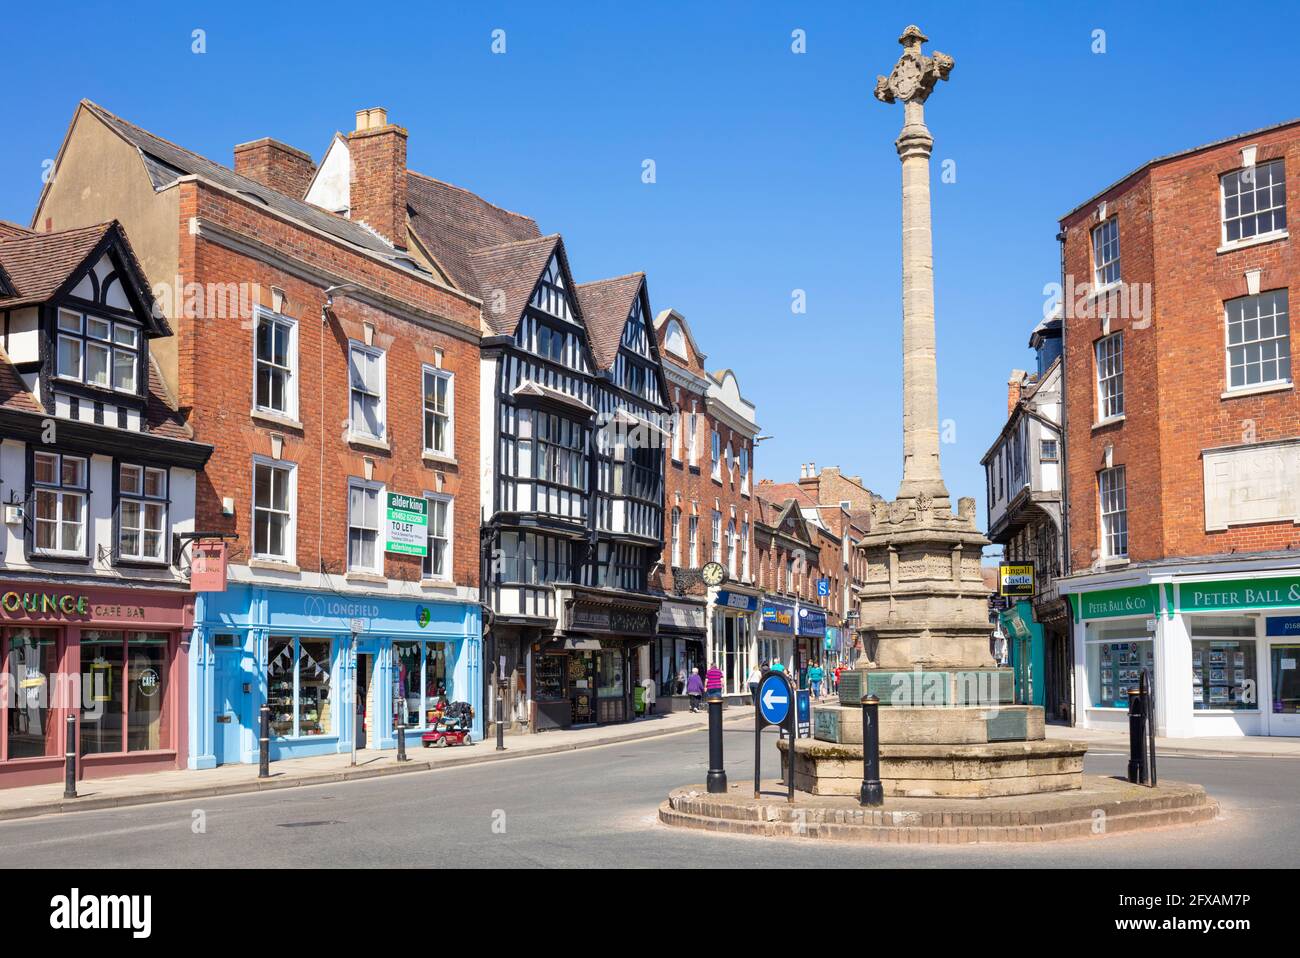 La rotonda de tiendas del centro de la ciudad de Tewkesbury y el monumento conmemorativo de la guerra de Tewkesbury o la Cruz, Tewkesbury, Gloucestershire, Inglaterra, GB, Reino Unido, Europa Foto de stock